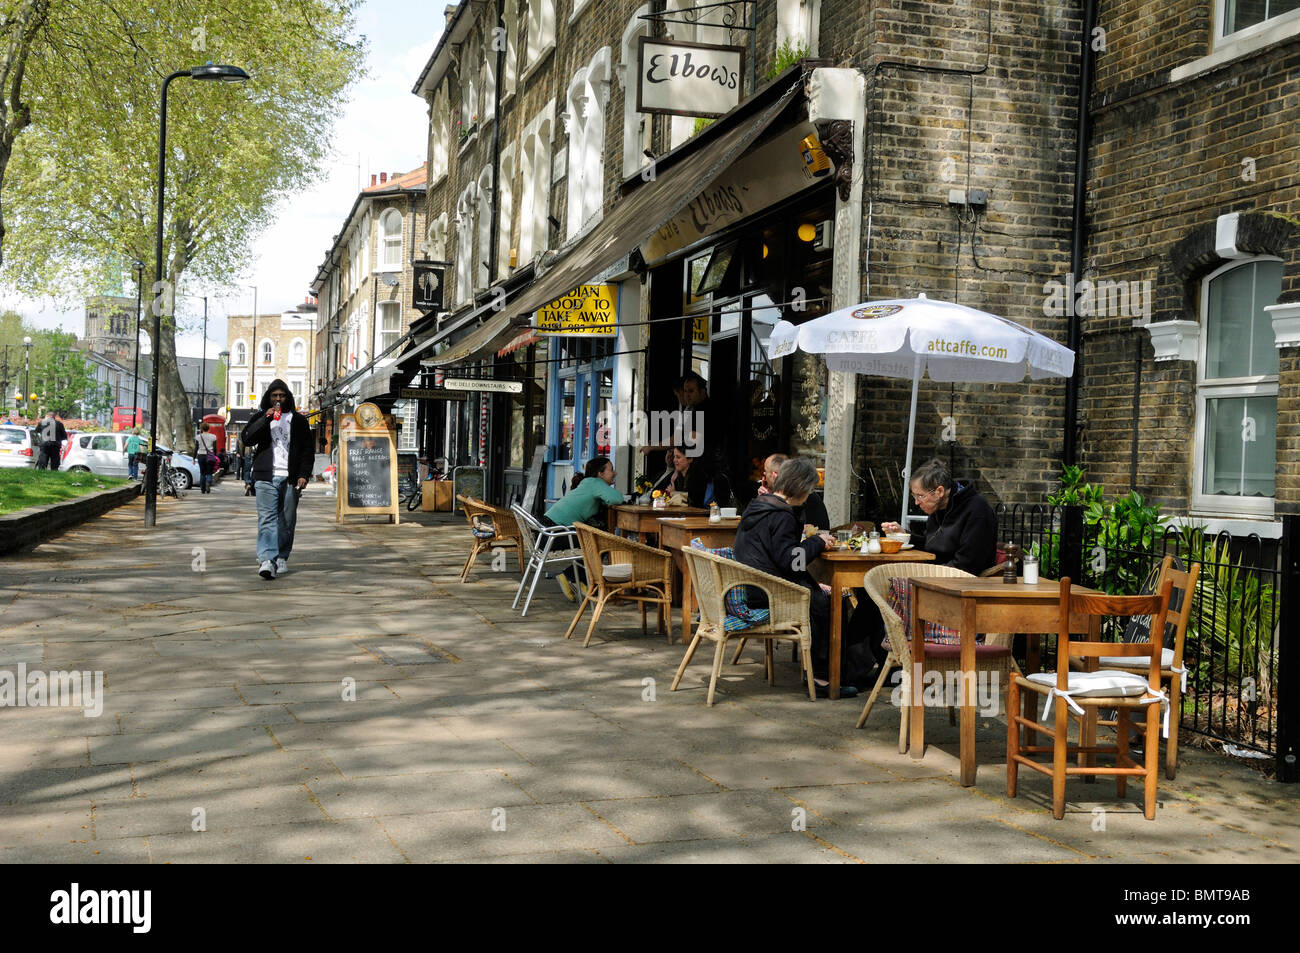 Persone che mangiano fuori Elbows Café in una parte alla moda di Hackney Londra Inghilterra Regno Unito Foto Stock